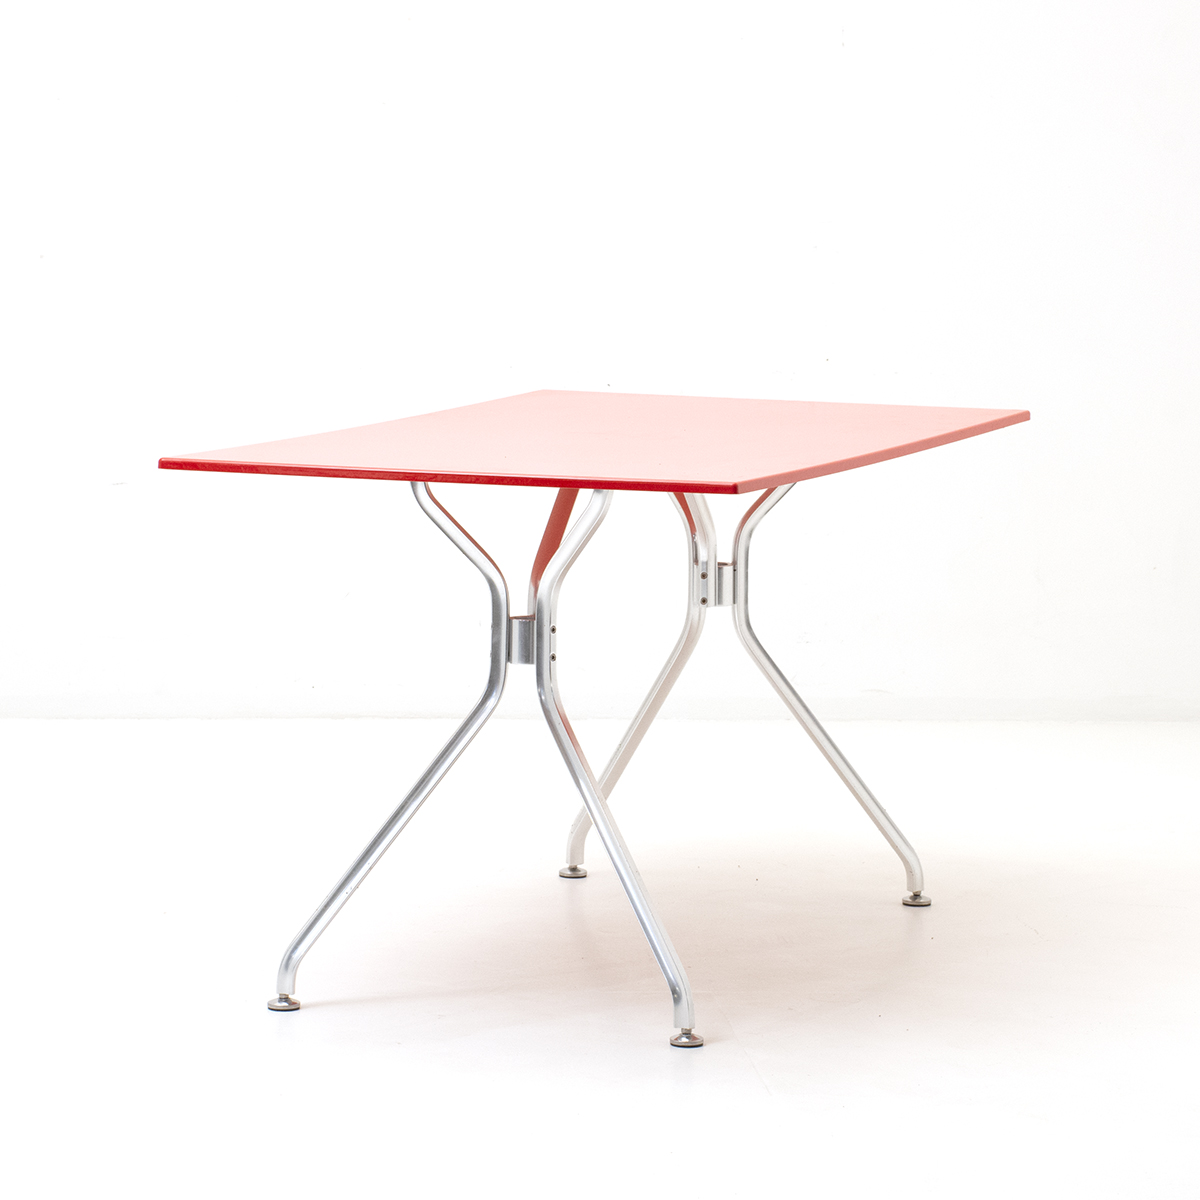 Roter Gartentisch, Alu6 von Seleform - 3